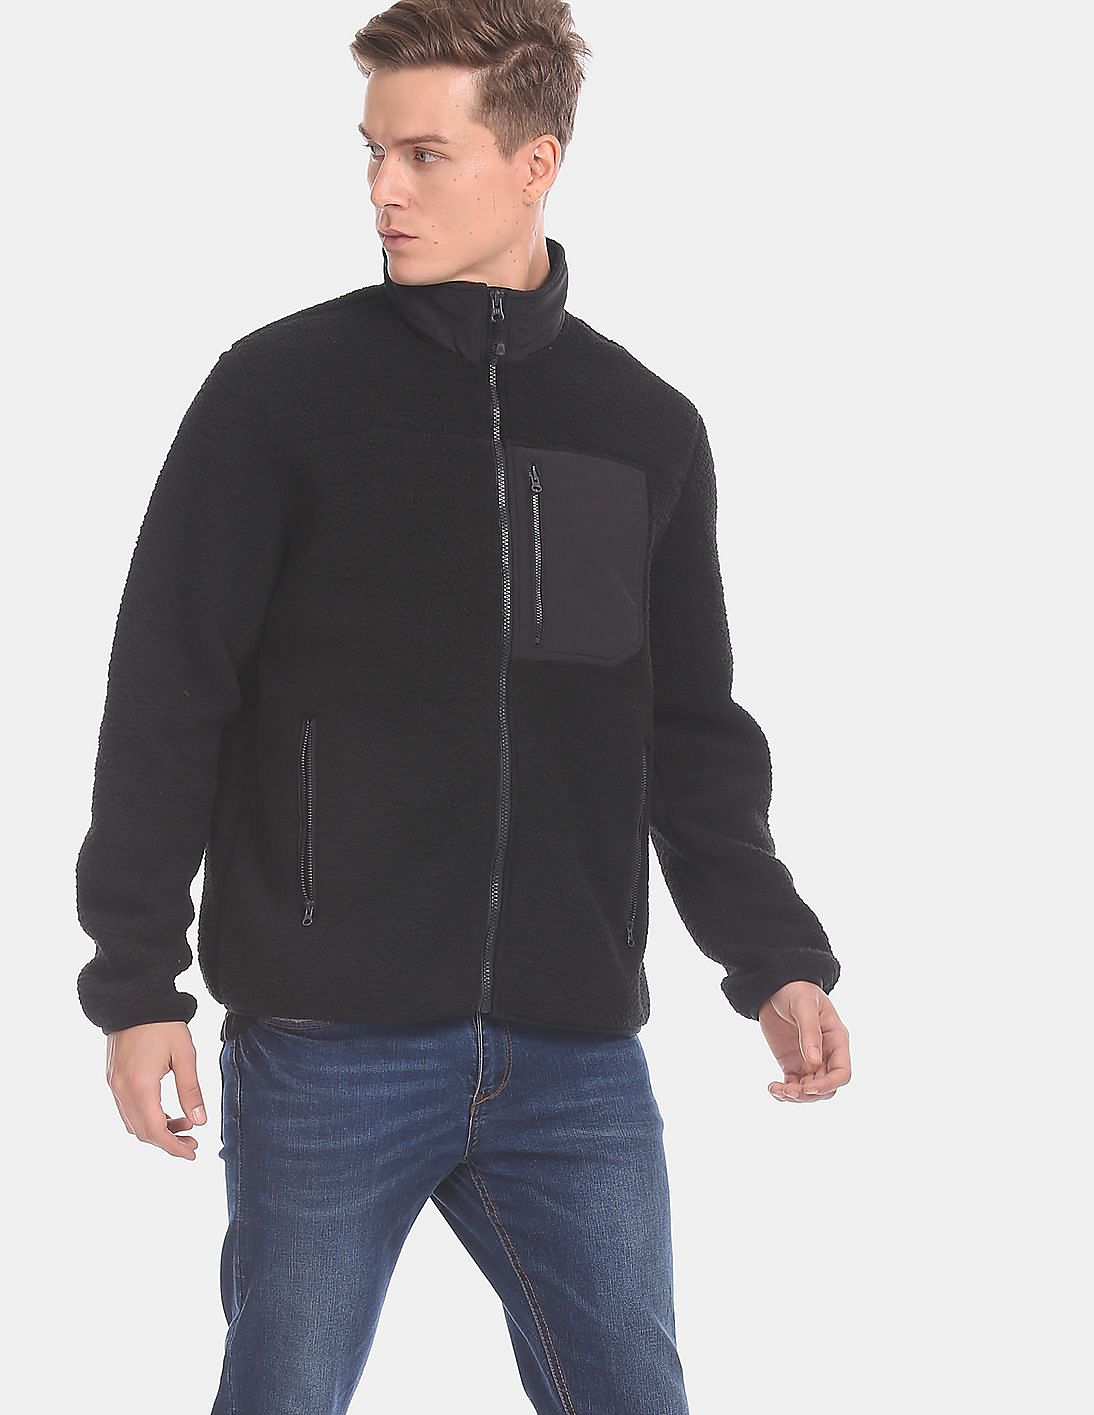 Buy GAP Black Fleece Zip-Up Jacket - NNNOW.com